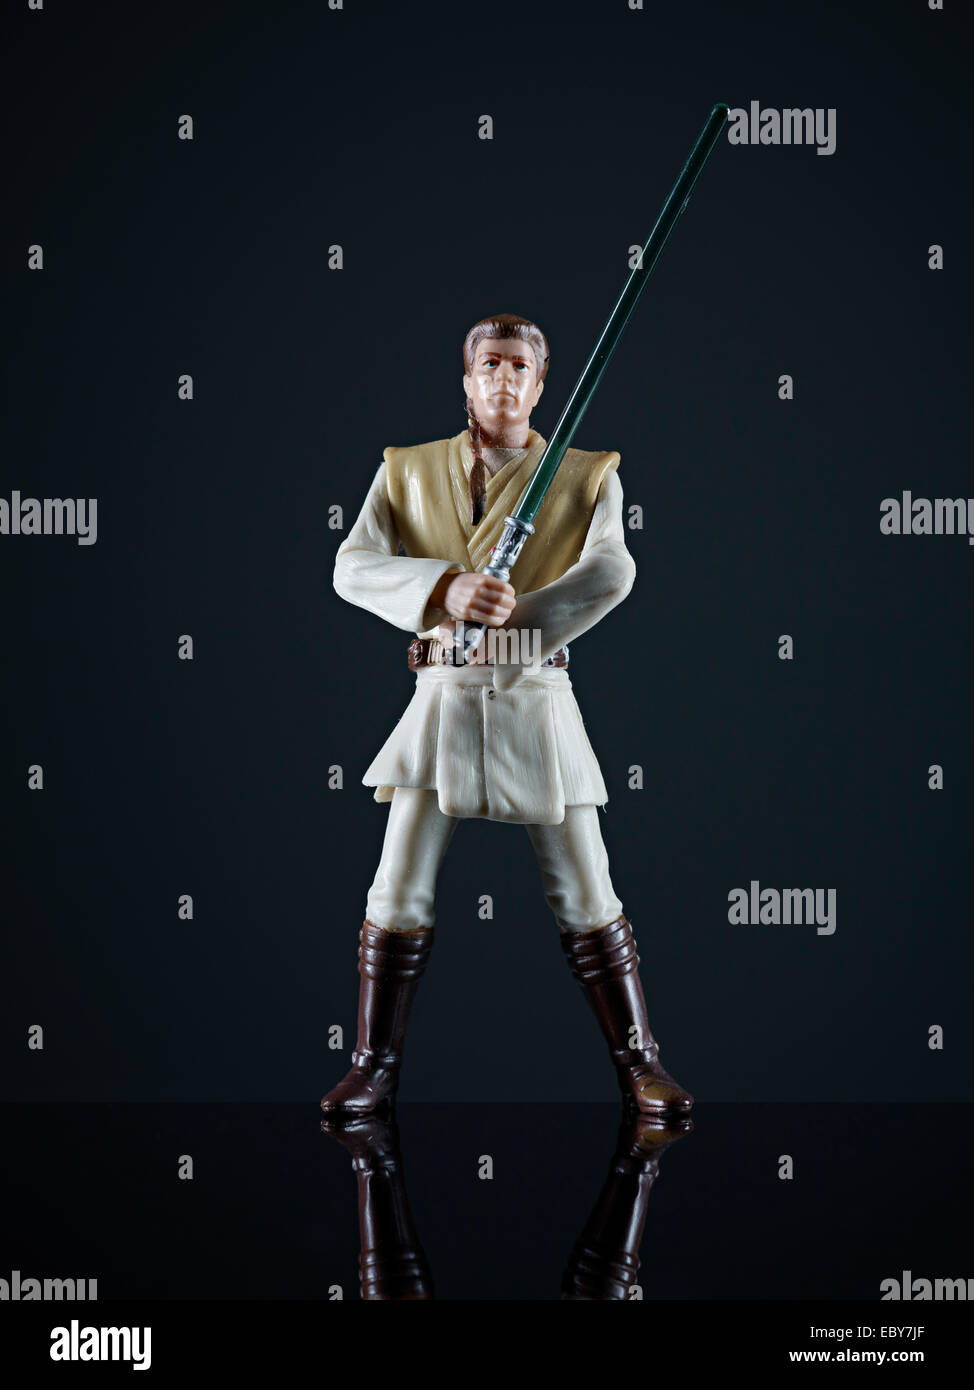 Qui gon jin star wars action figure portrait en studio d'une collection de jouets des années 90 Banque D'Images